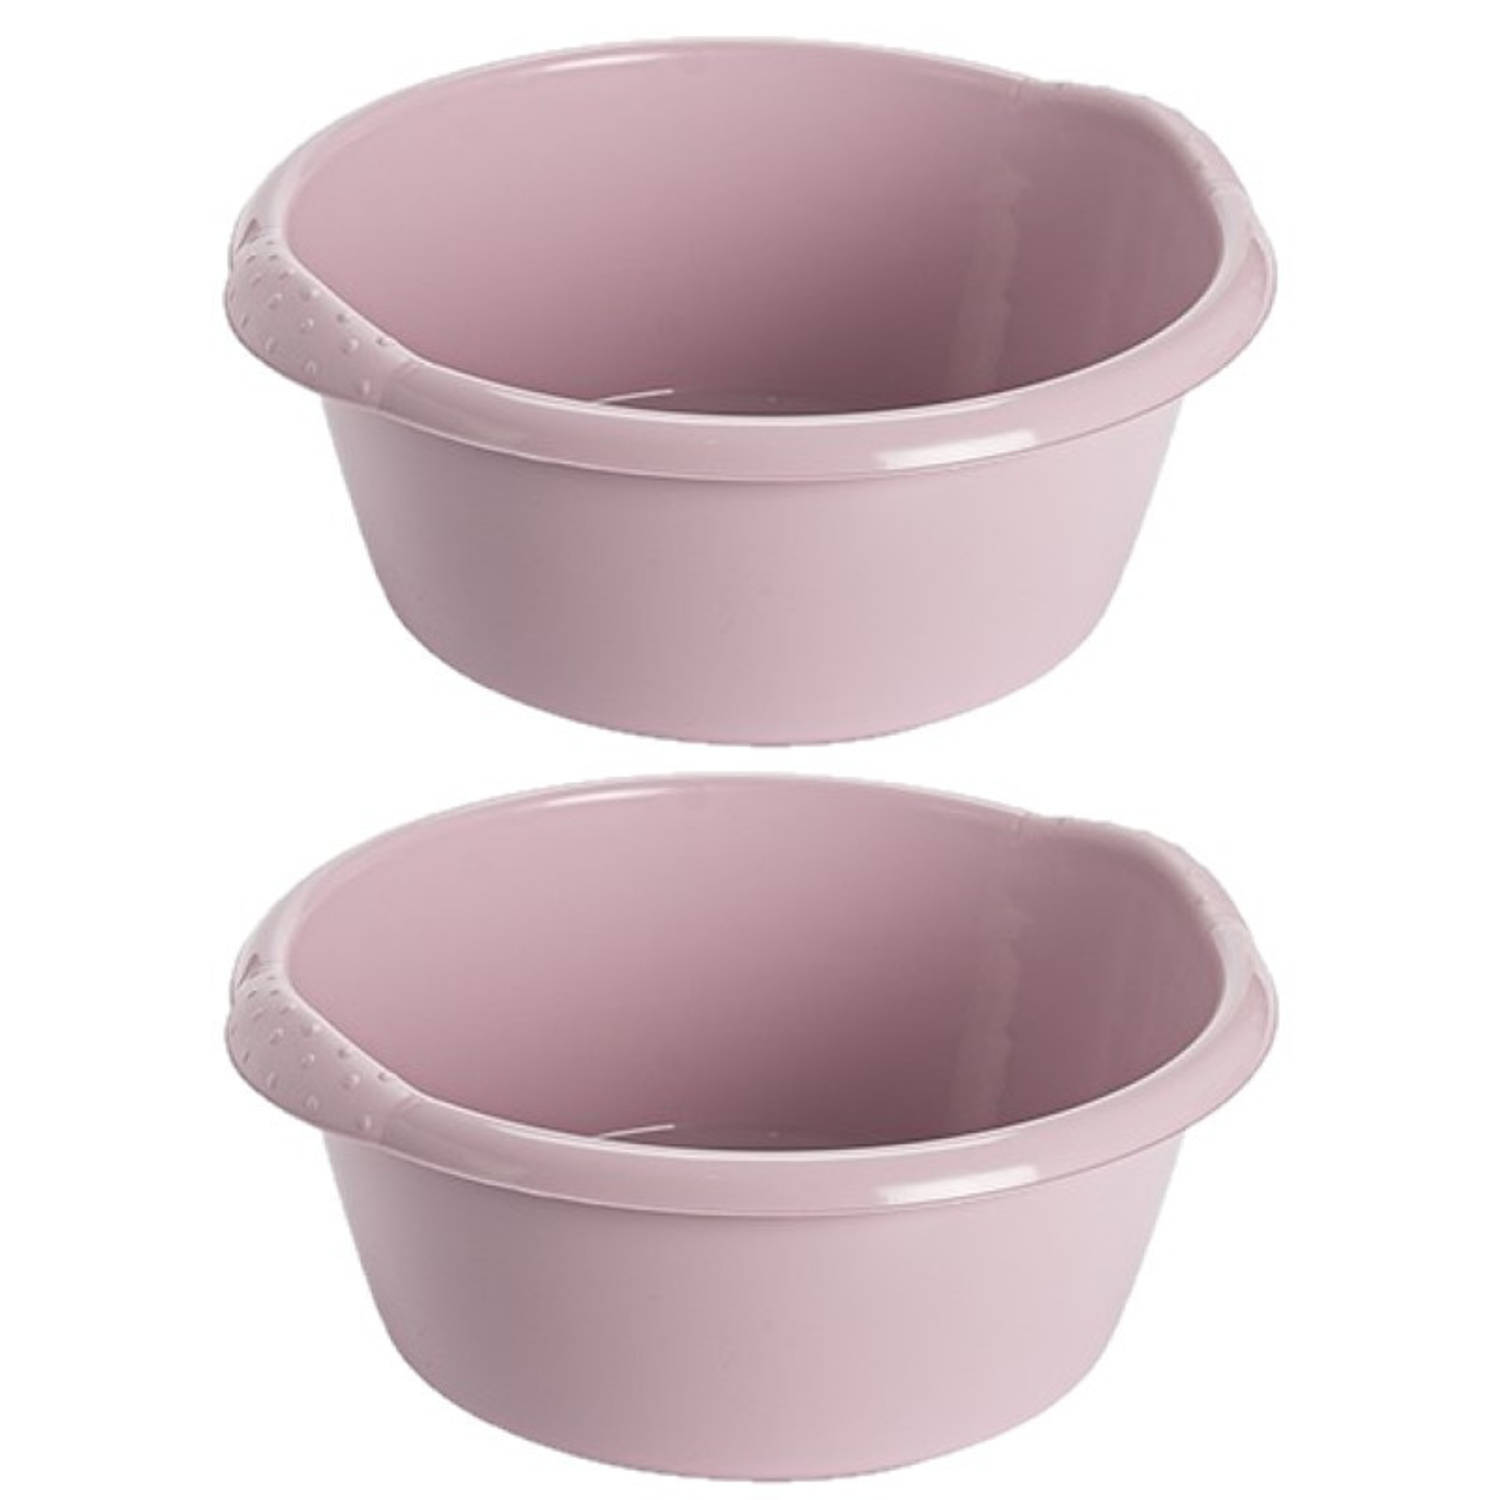 Hega hogar 2x stuks kunststof plastic afwas teiltje/afwasbak rond 15 liter zacht roze - Diameter 42 cm x Hoogte 17 cm - Schoonmaak/huishouden